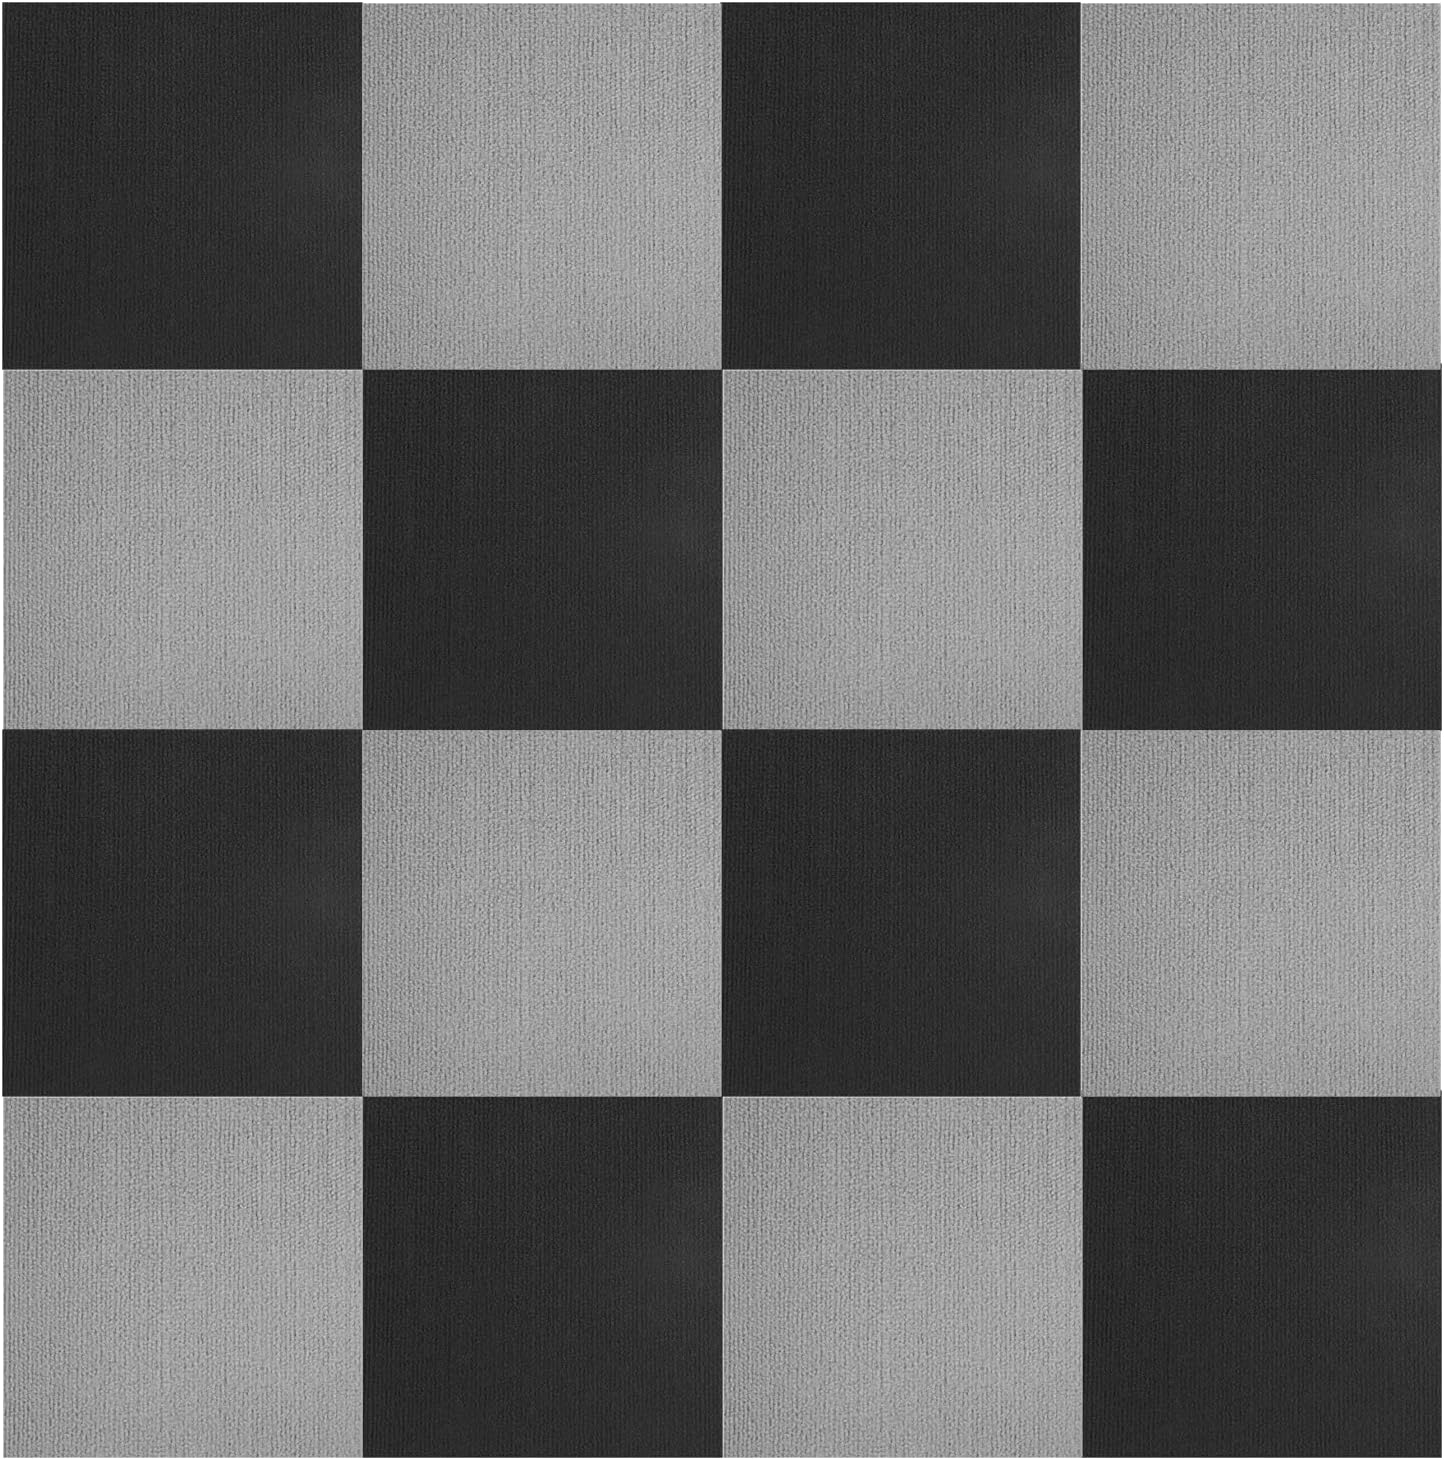 Boshen 24 Sq.Ft Peel and Stick Carpet Tiles 12" x 12" Self Adhesive Anti-Slip Floor Mats Protect Pads Multi-Purpose Floor Ca